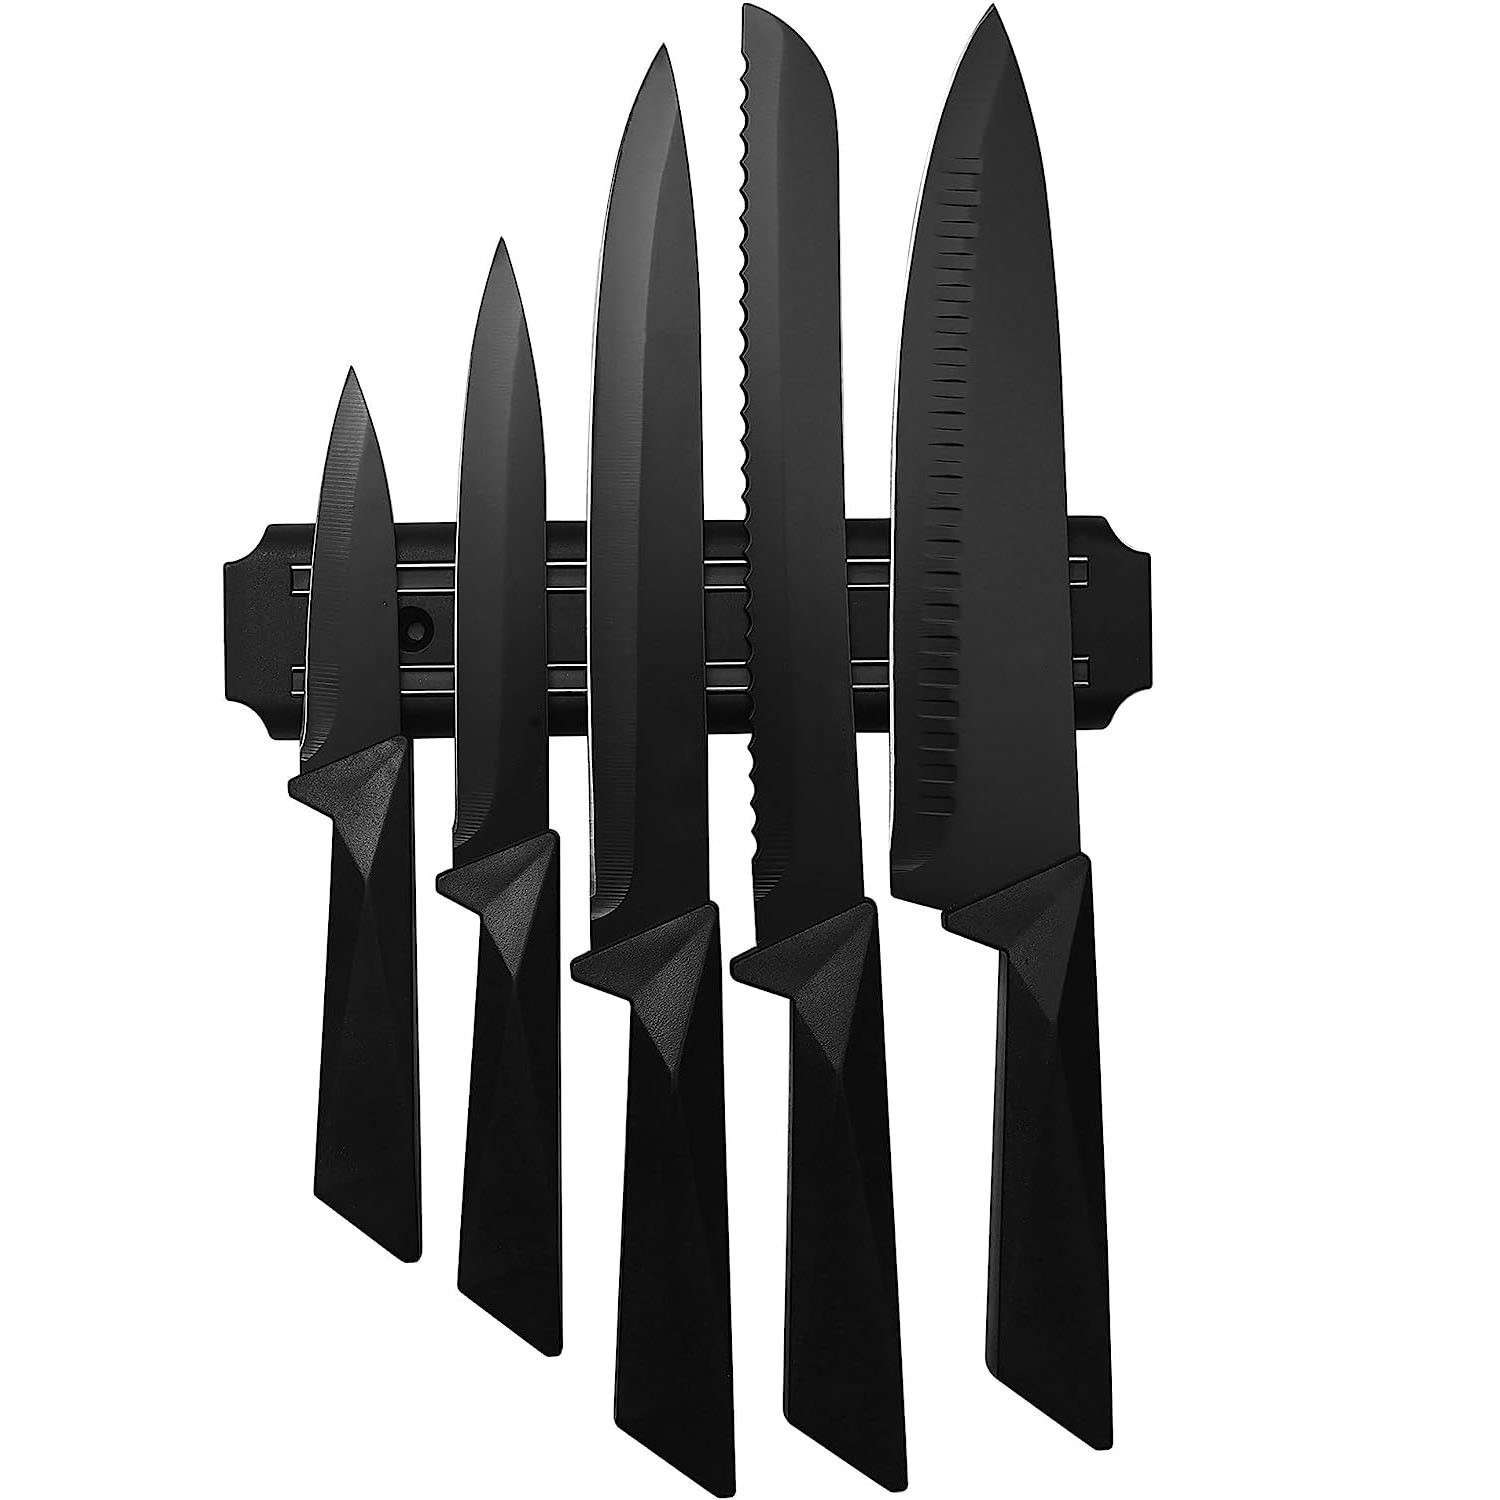 LUXESIT 14 Piece Stainless Steel Knife Block Set